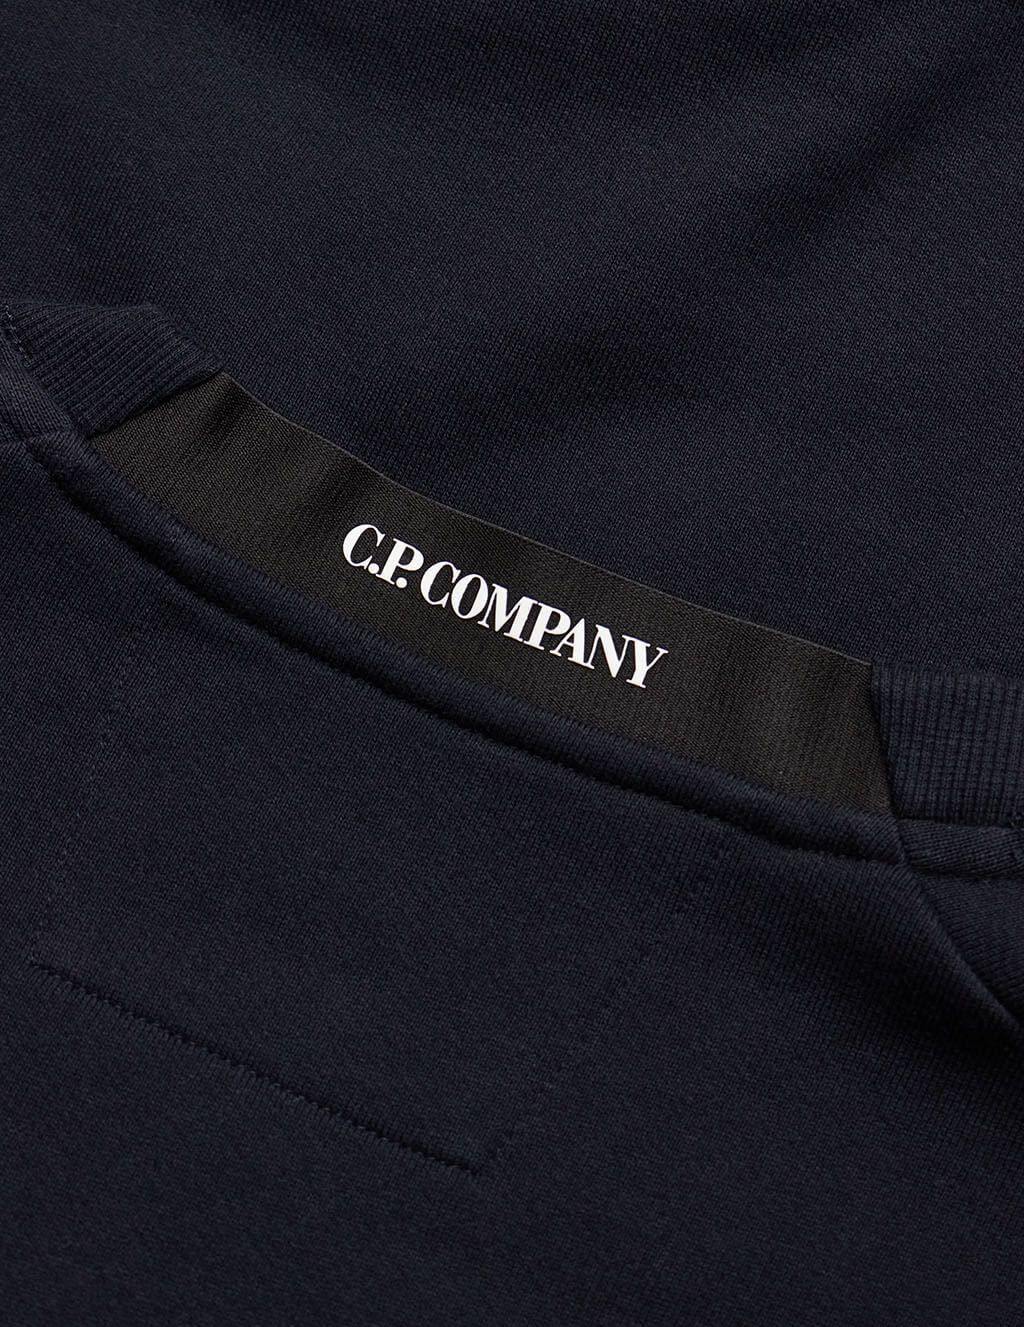 C.P. Company Lens Sweatshirt in Total Eclipse Navy